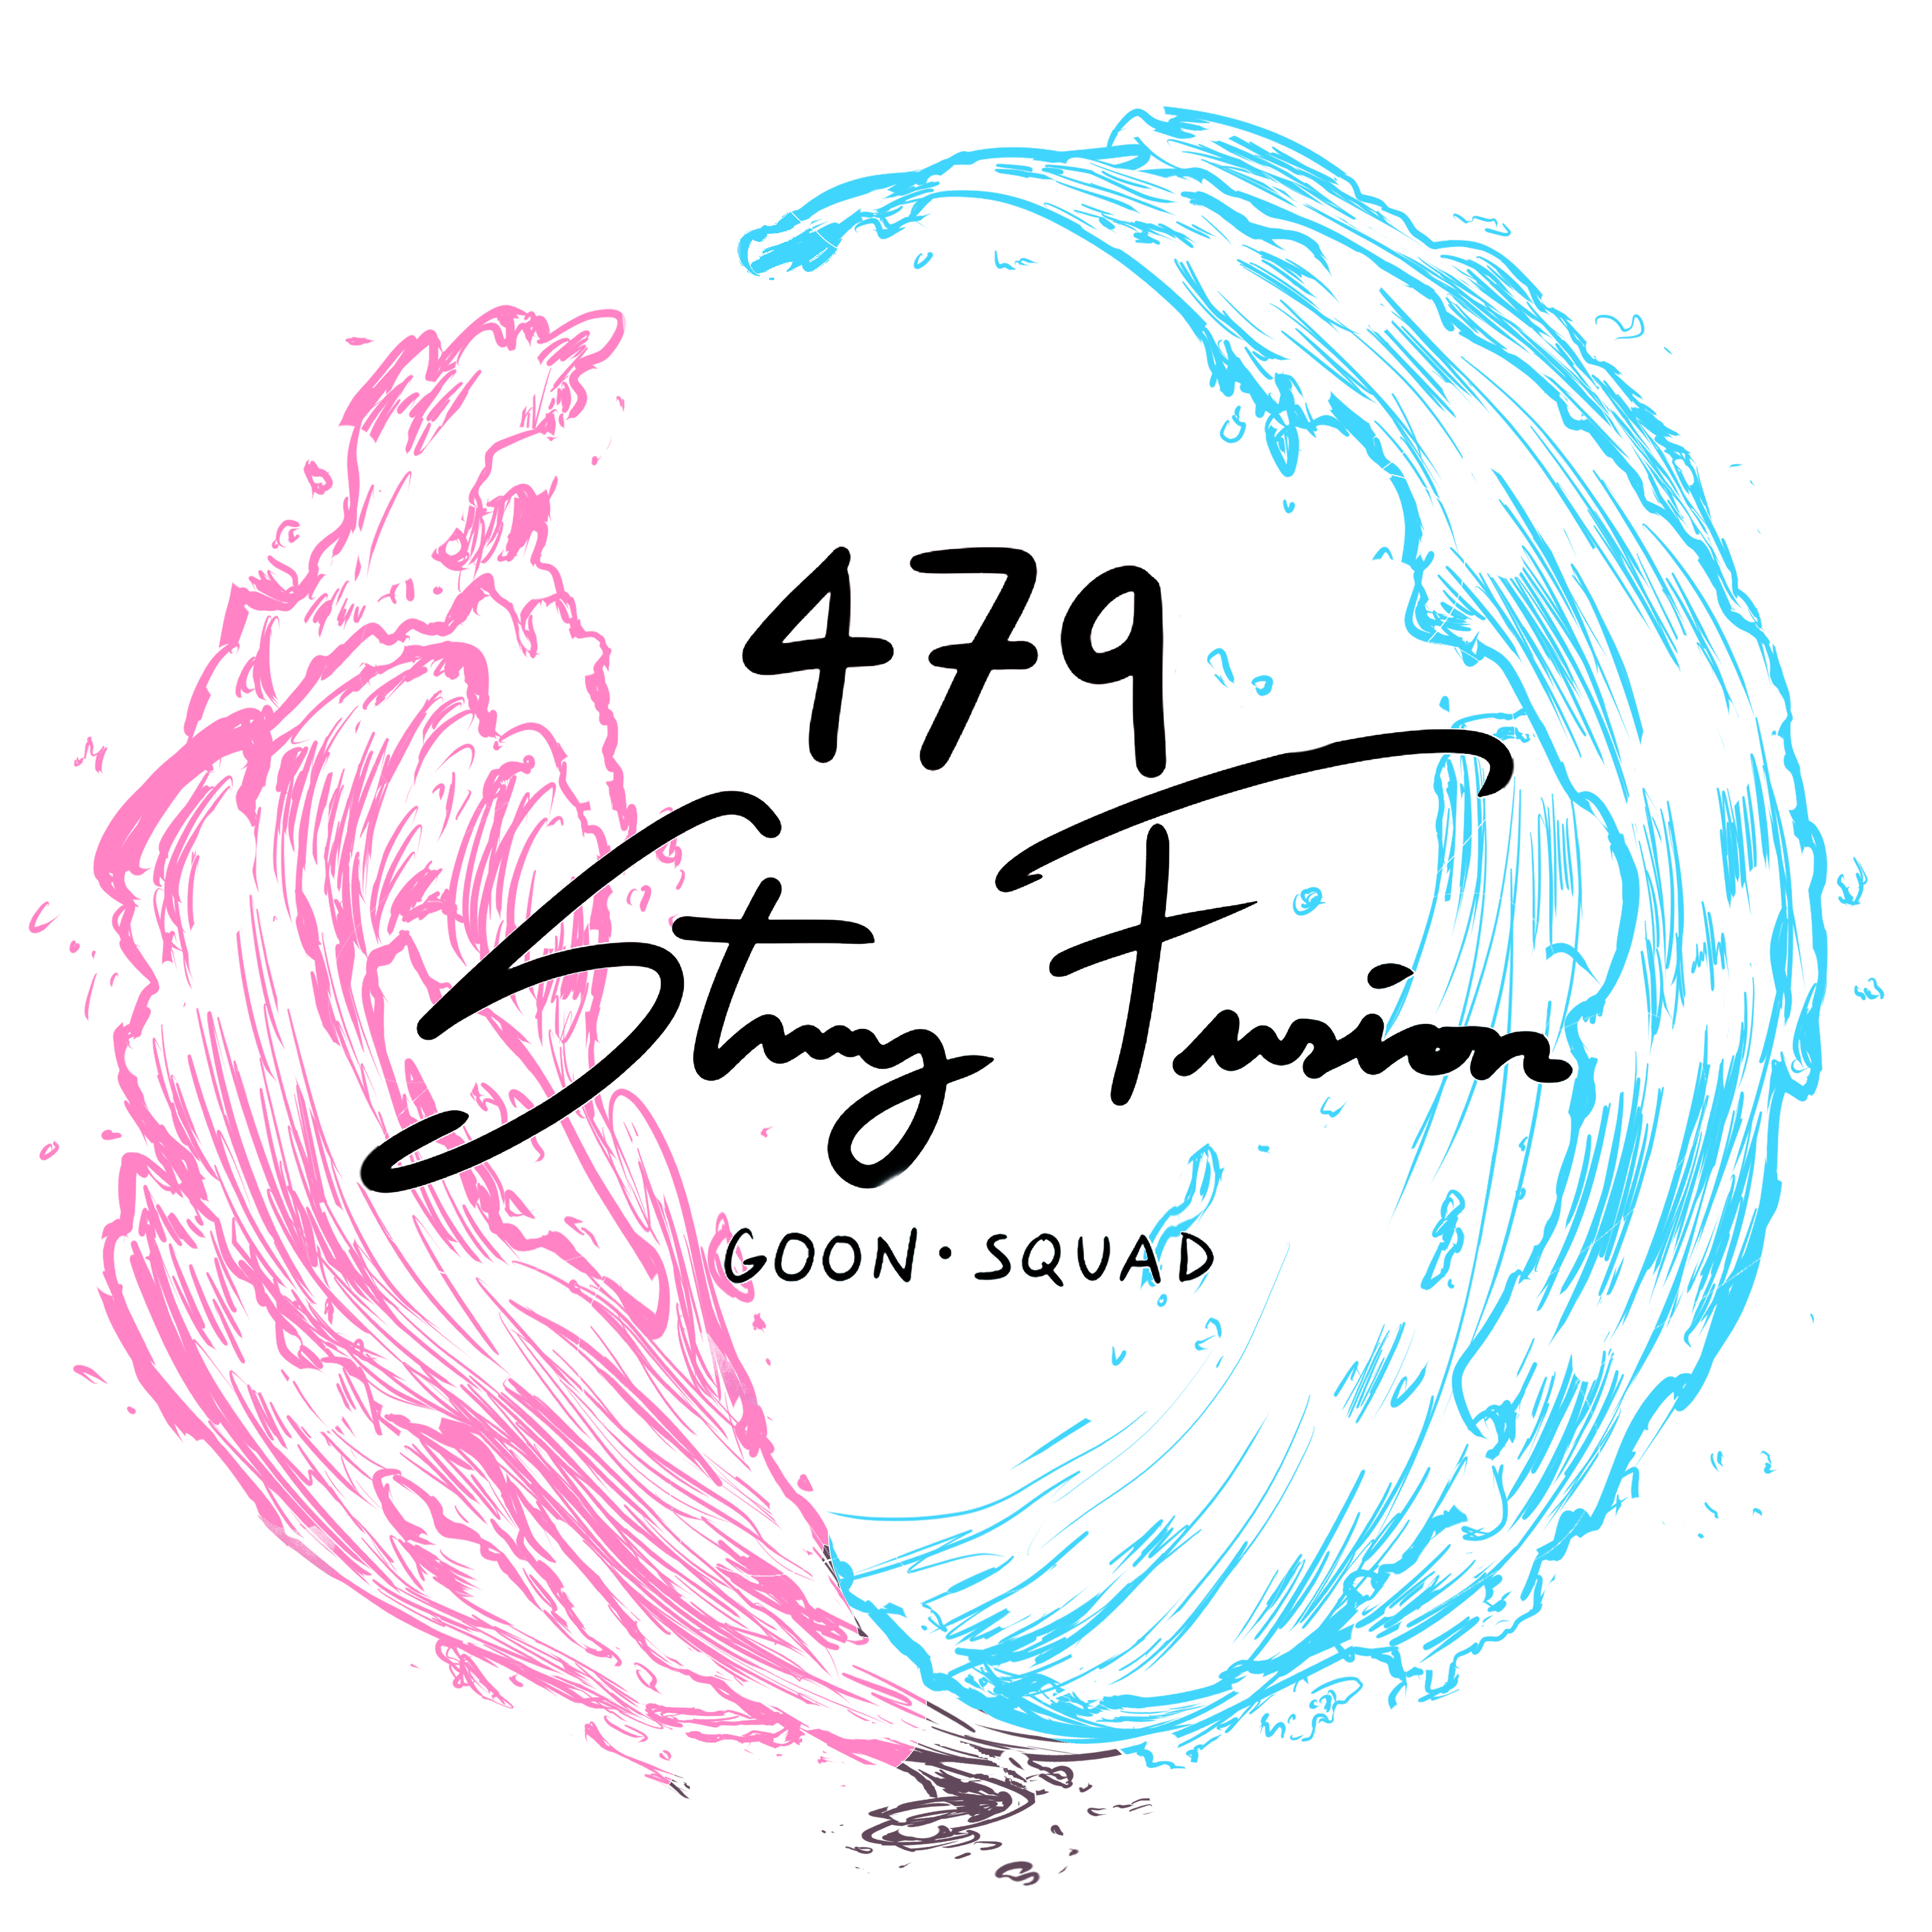 Image: Stuy Fusion logo